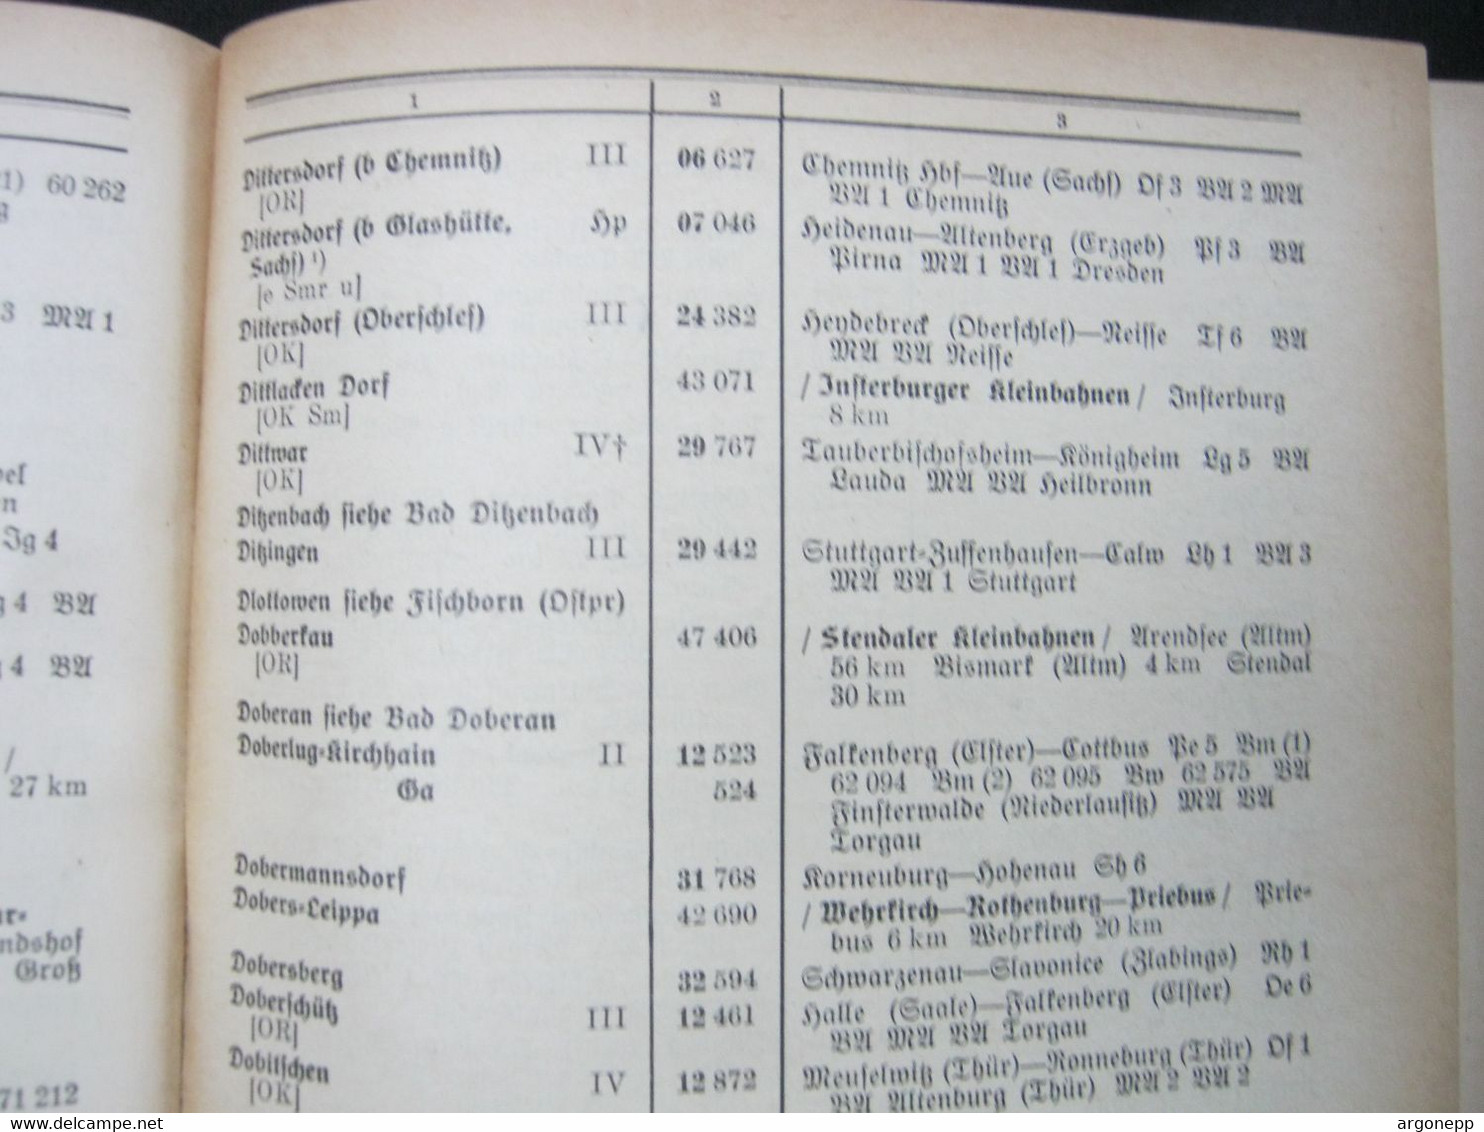 EISENBAHN ,DEUTSCHE REICHSBAHN ,   Amtliches Bahnhofverzeichnis 1938 , 946 Seiten , Mit Ostgebieten - Trasporti